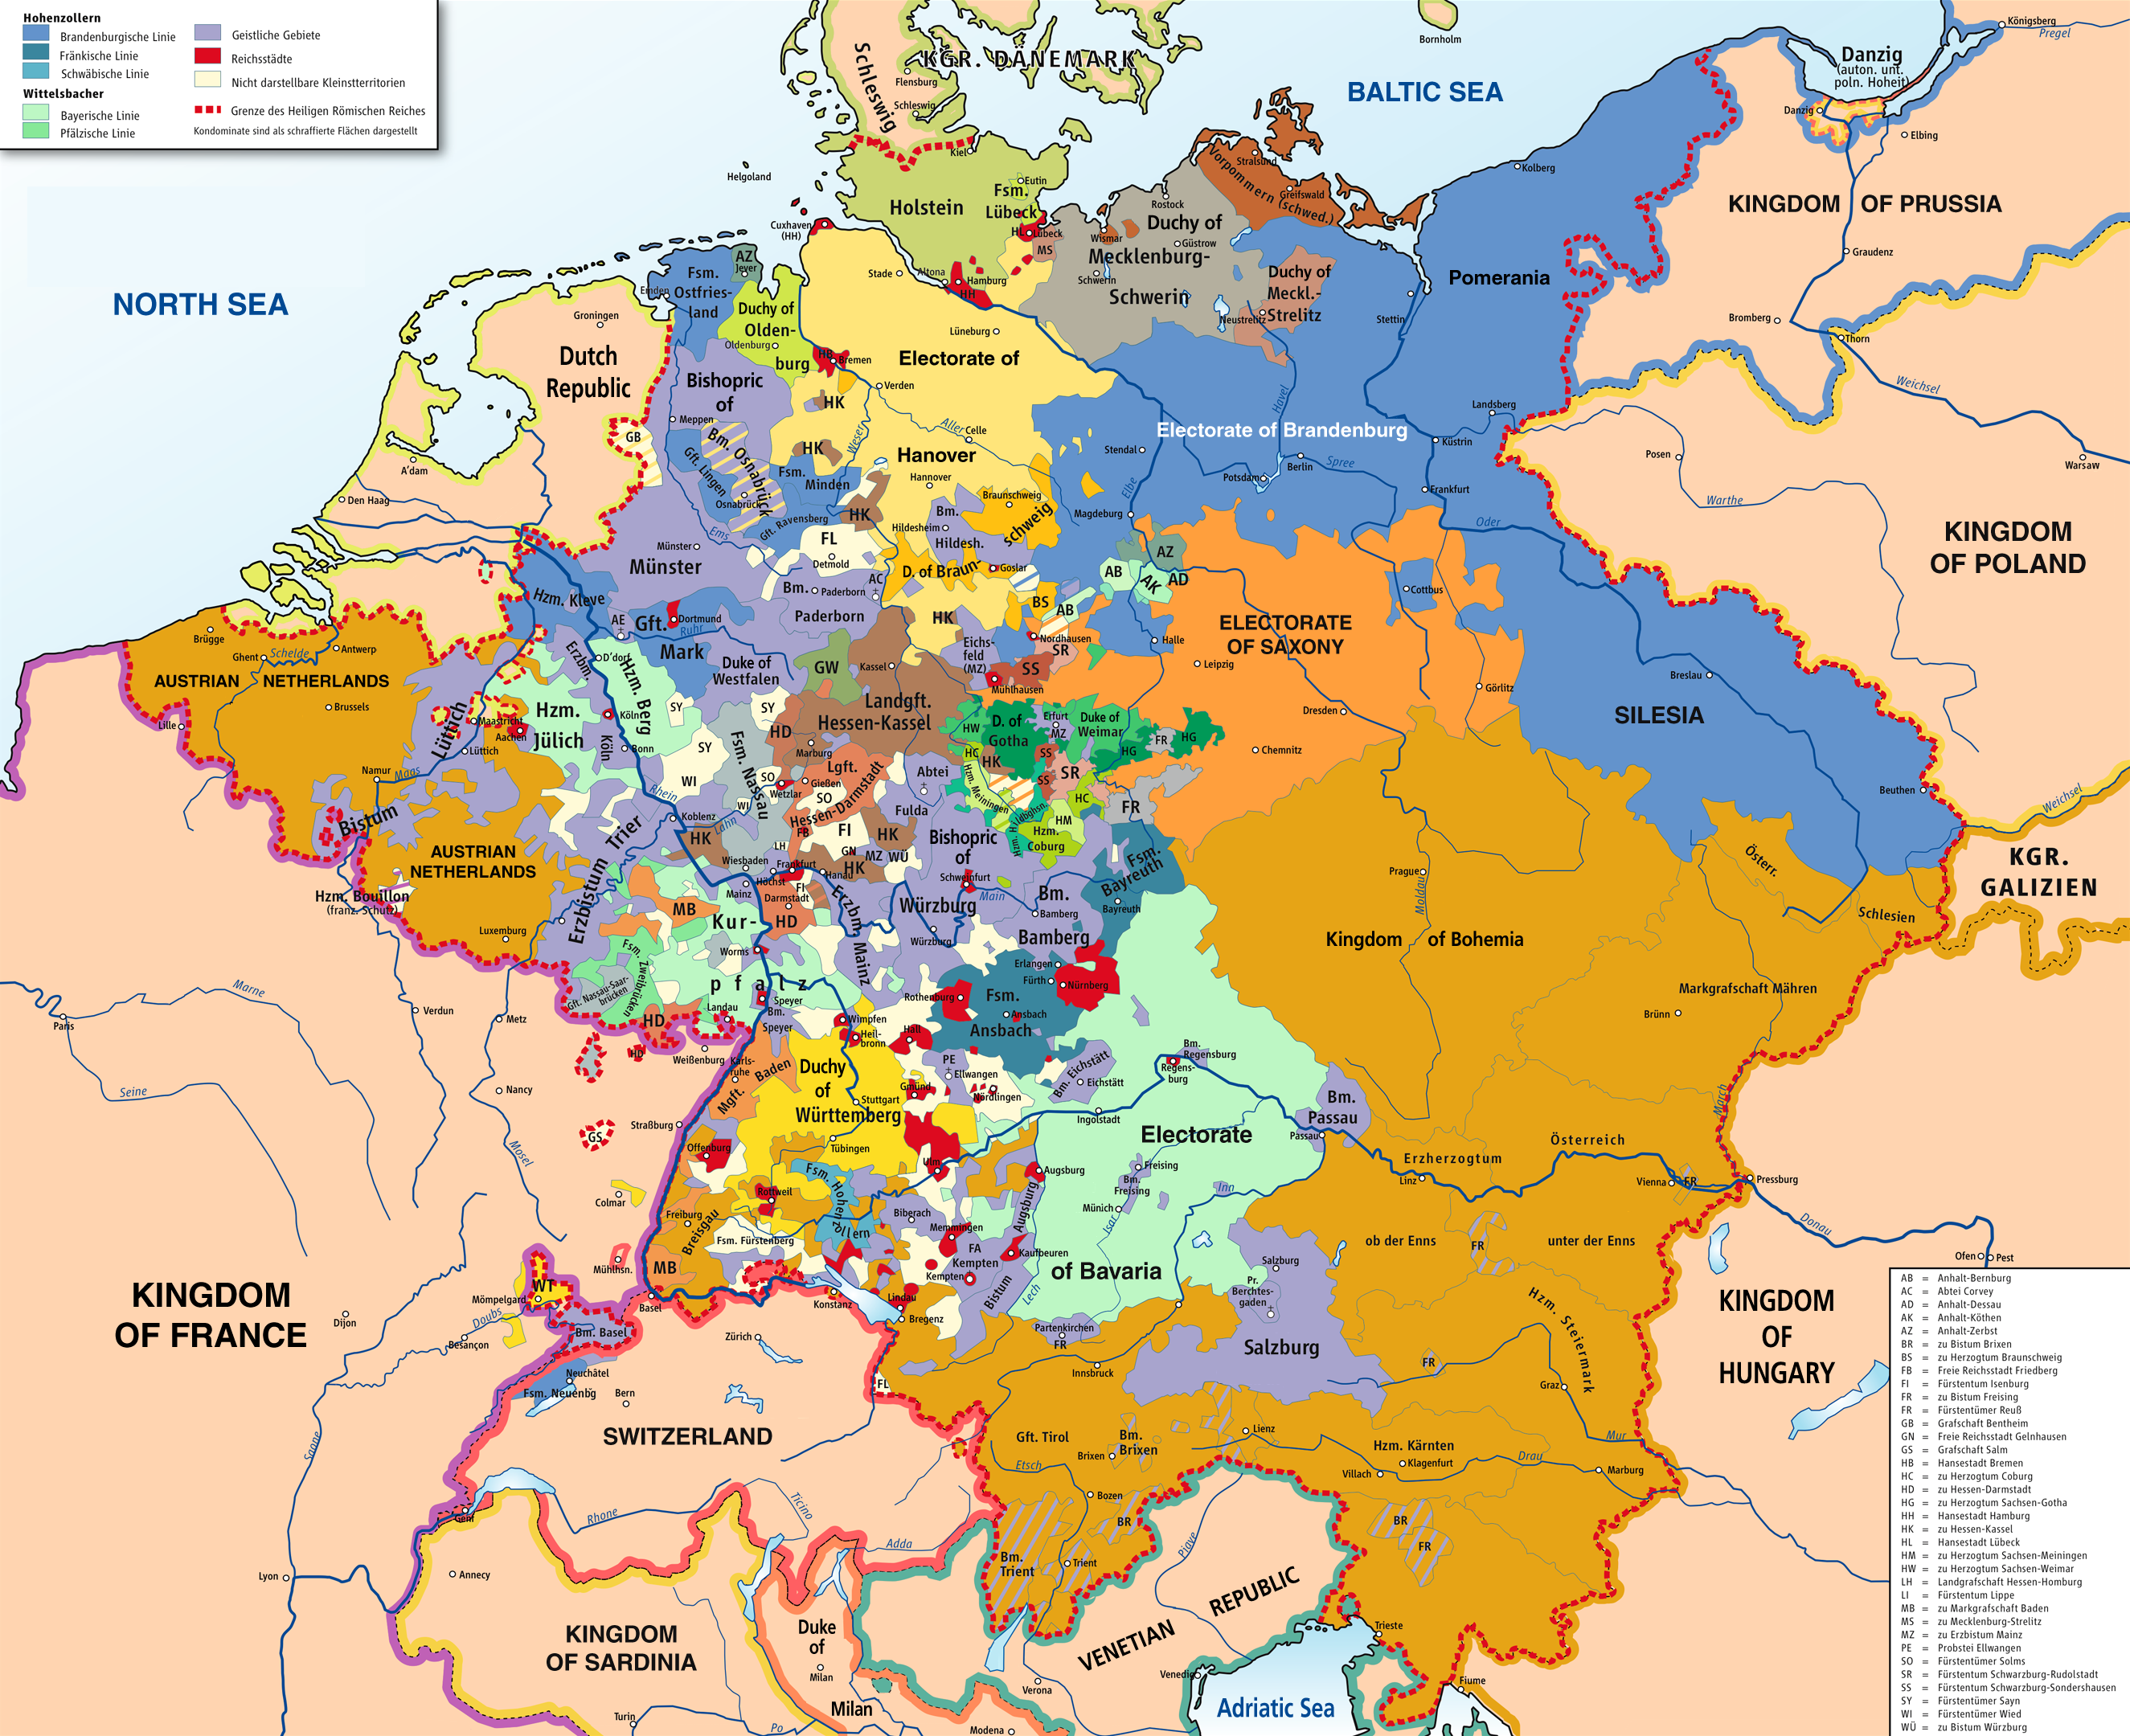 要理解大革命和拿破仑战争给德意志带来的影响首先要正确的理解